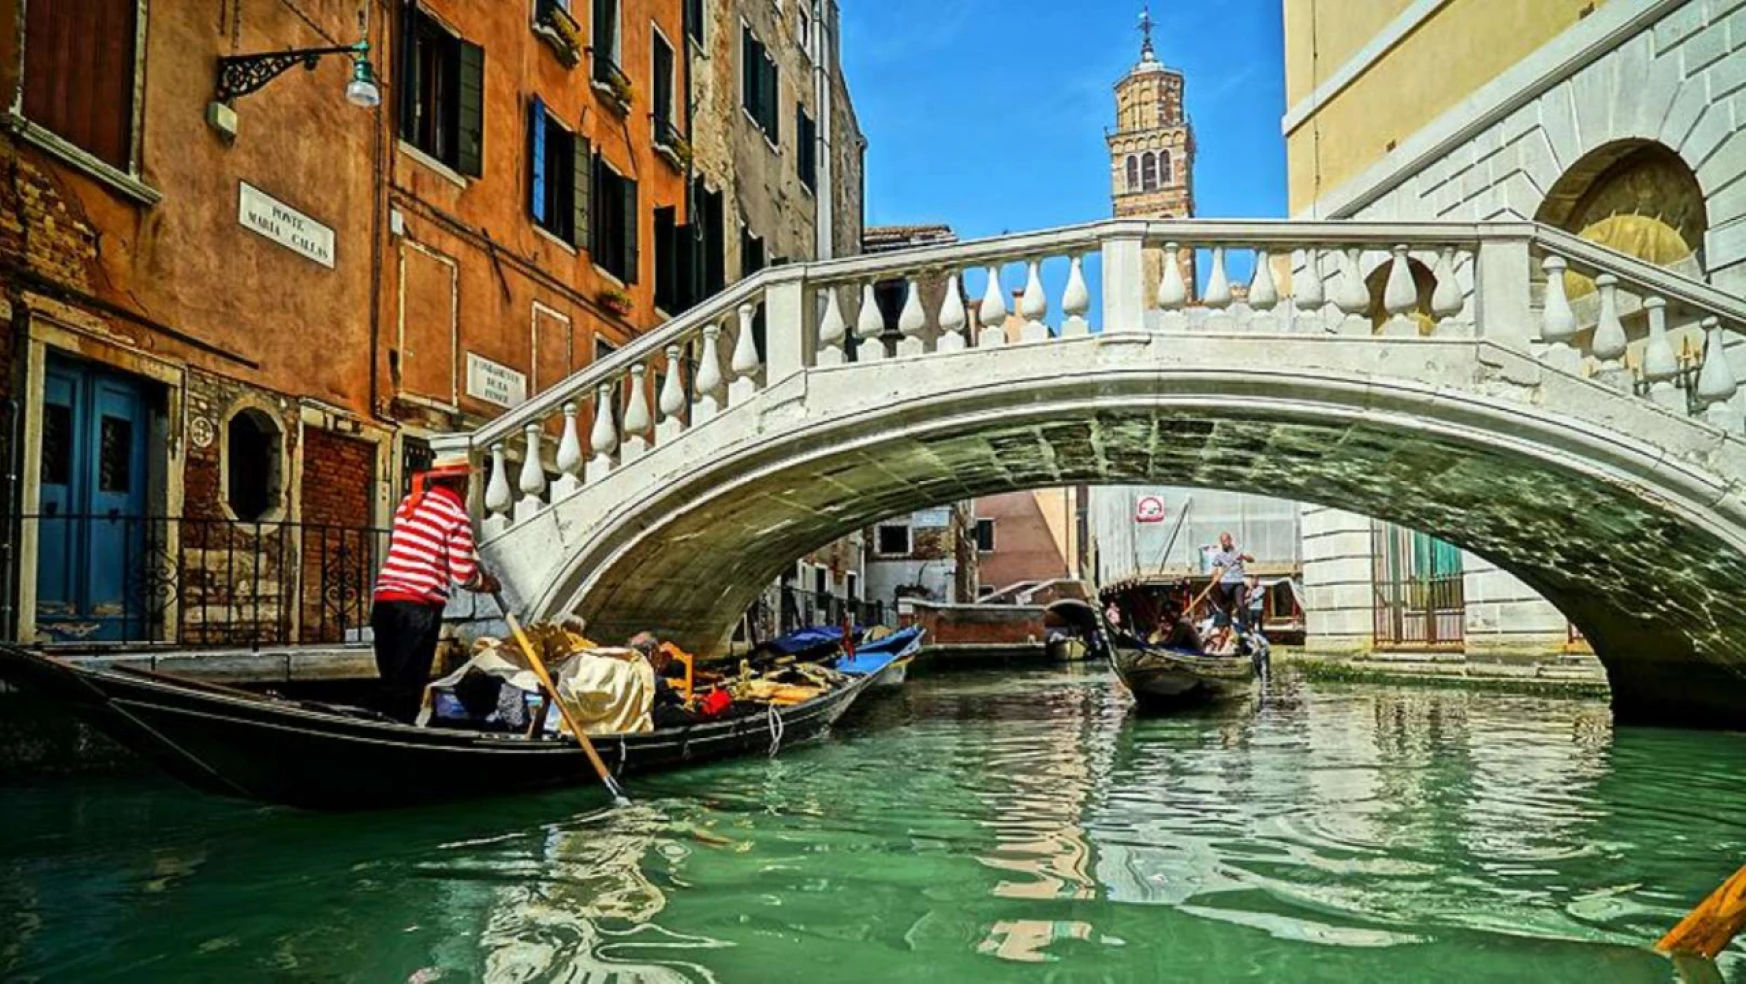 Venedik'te turist yoğunluğuna günlük 5 euro çözümü